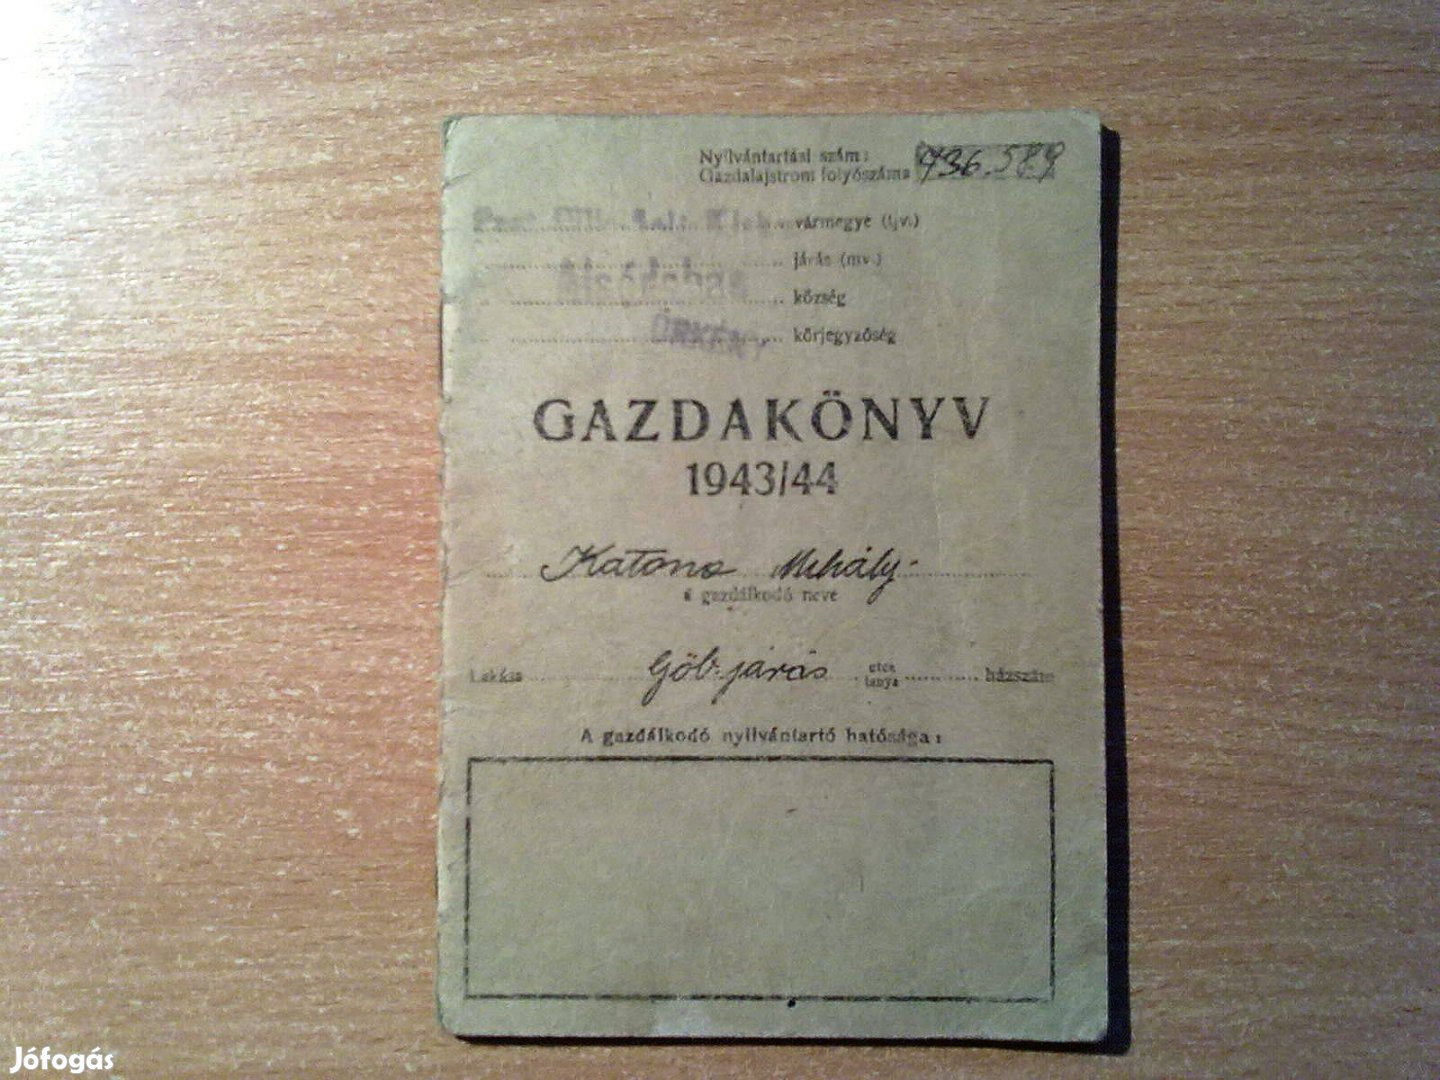 Gazdakönyv 1943/44